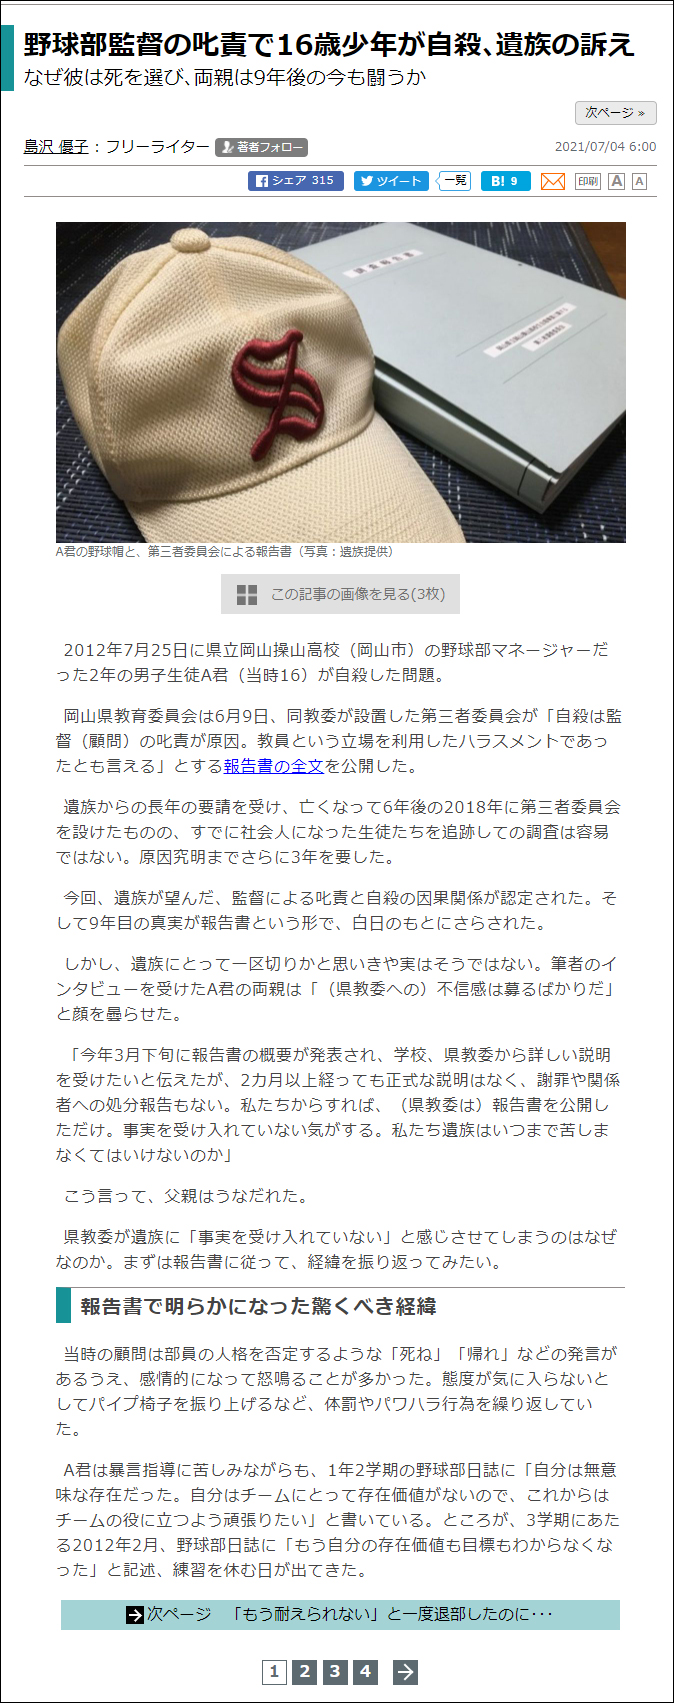 武田さち子：東洋経済新聞、2021年7月4日「野球部監督の叱責で16歳少年が自殺､遺族の訴え」